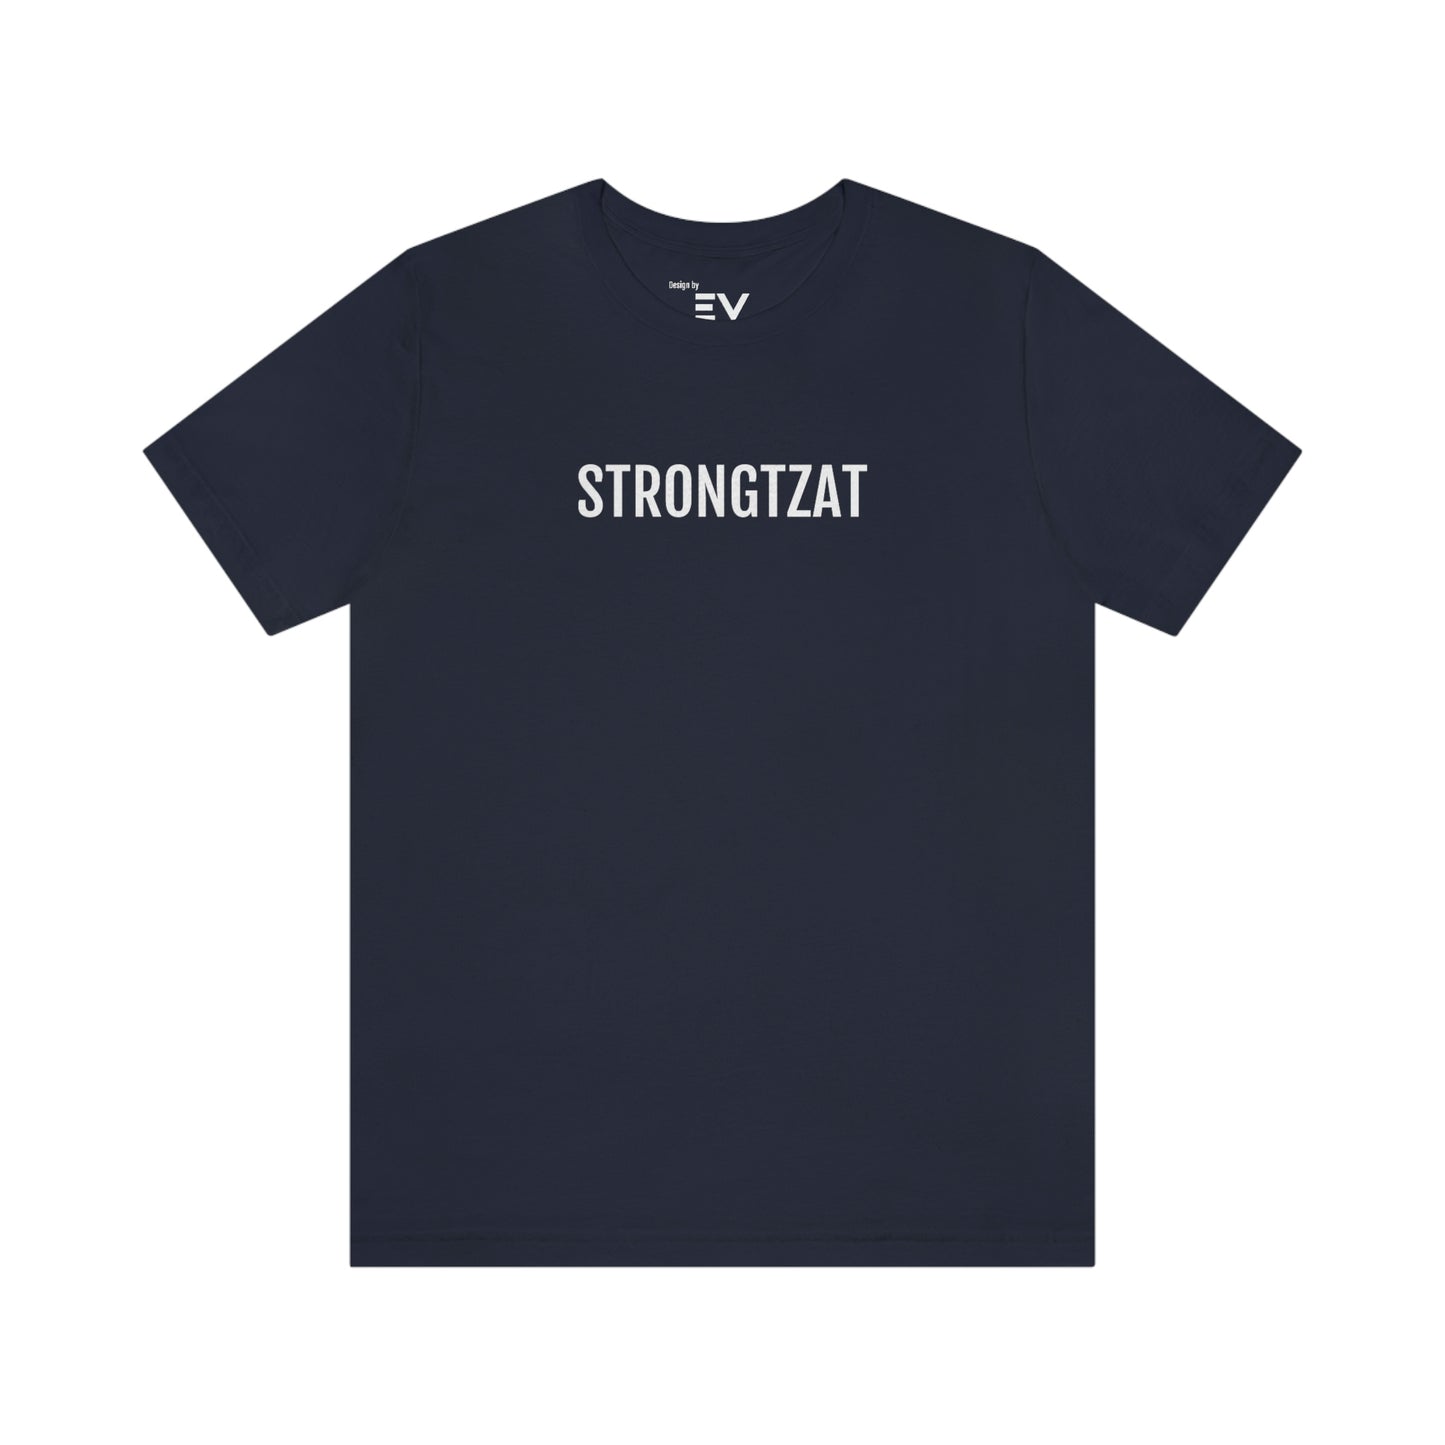 Strongtzat | Unisex T-Shirt uit Oost-Vlaanderen - Marine blauw